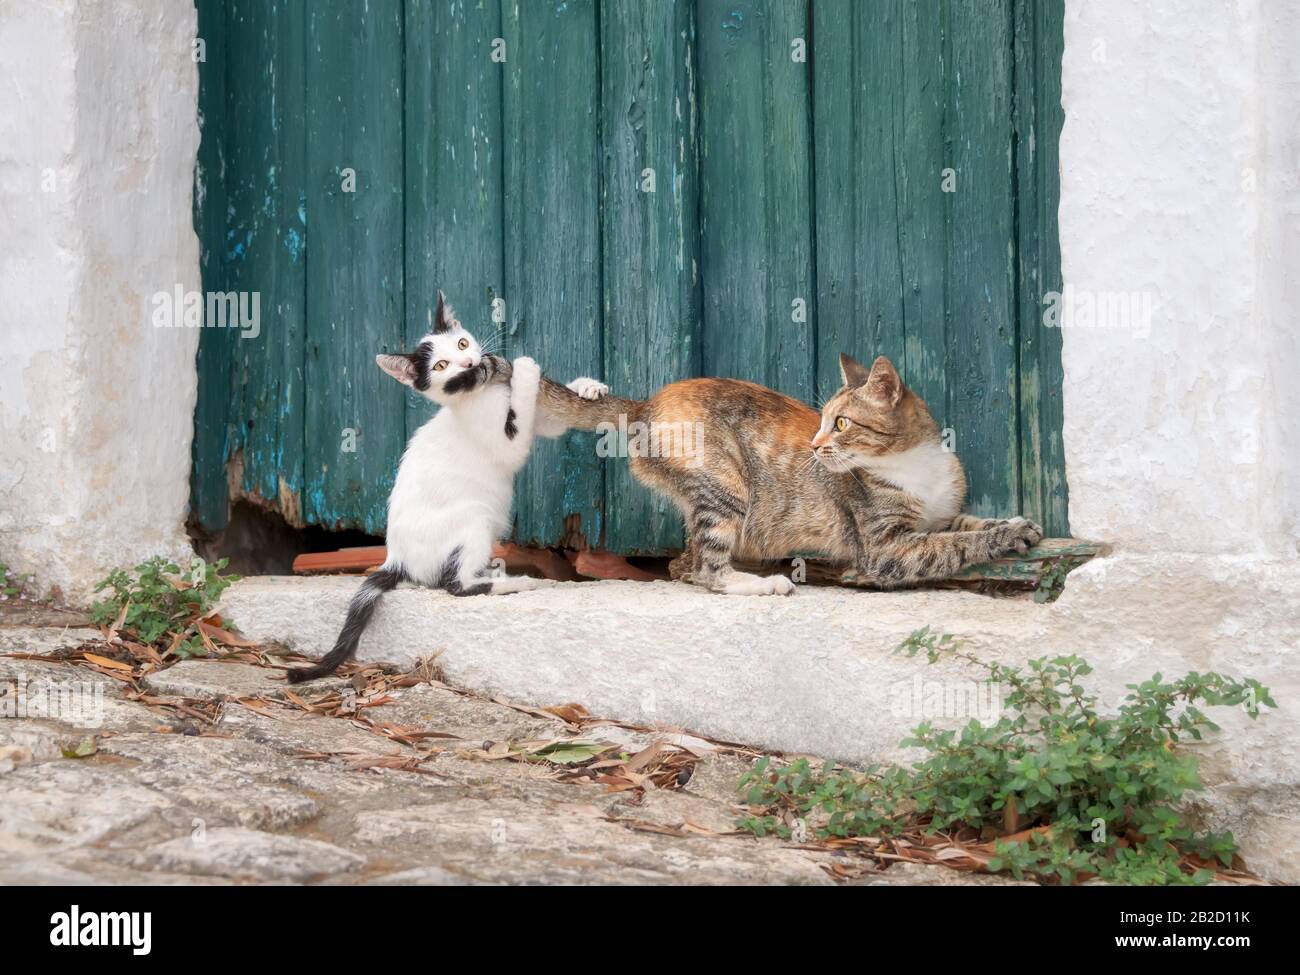 Divertente gatto cucciolo gioca e insegue la coda della sua madre di fronte a una vecchia porta di legno verde in un vicolo greco, Creta, Grecia Foto Stock